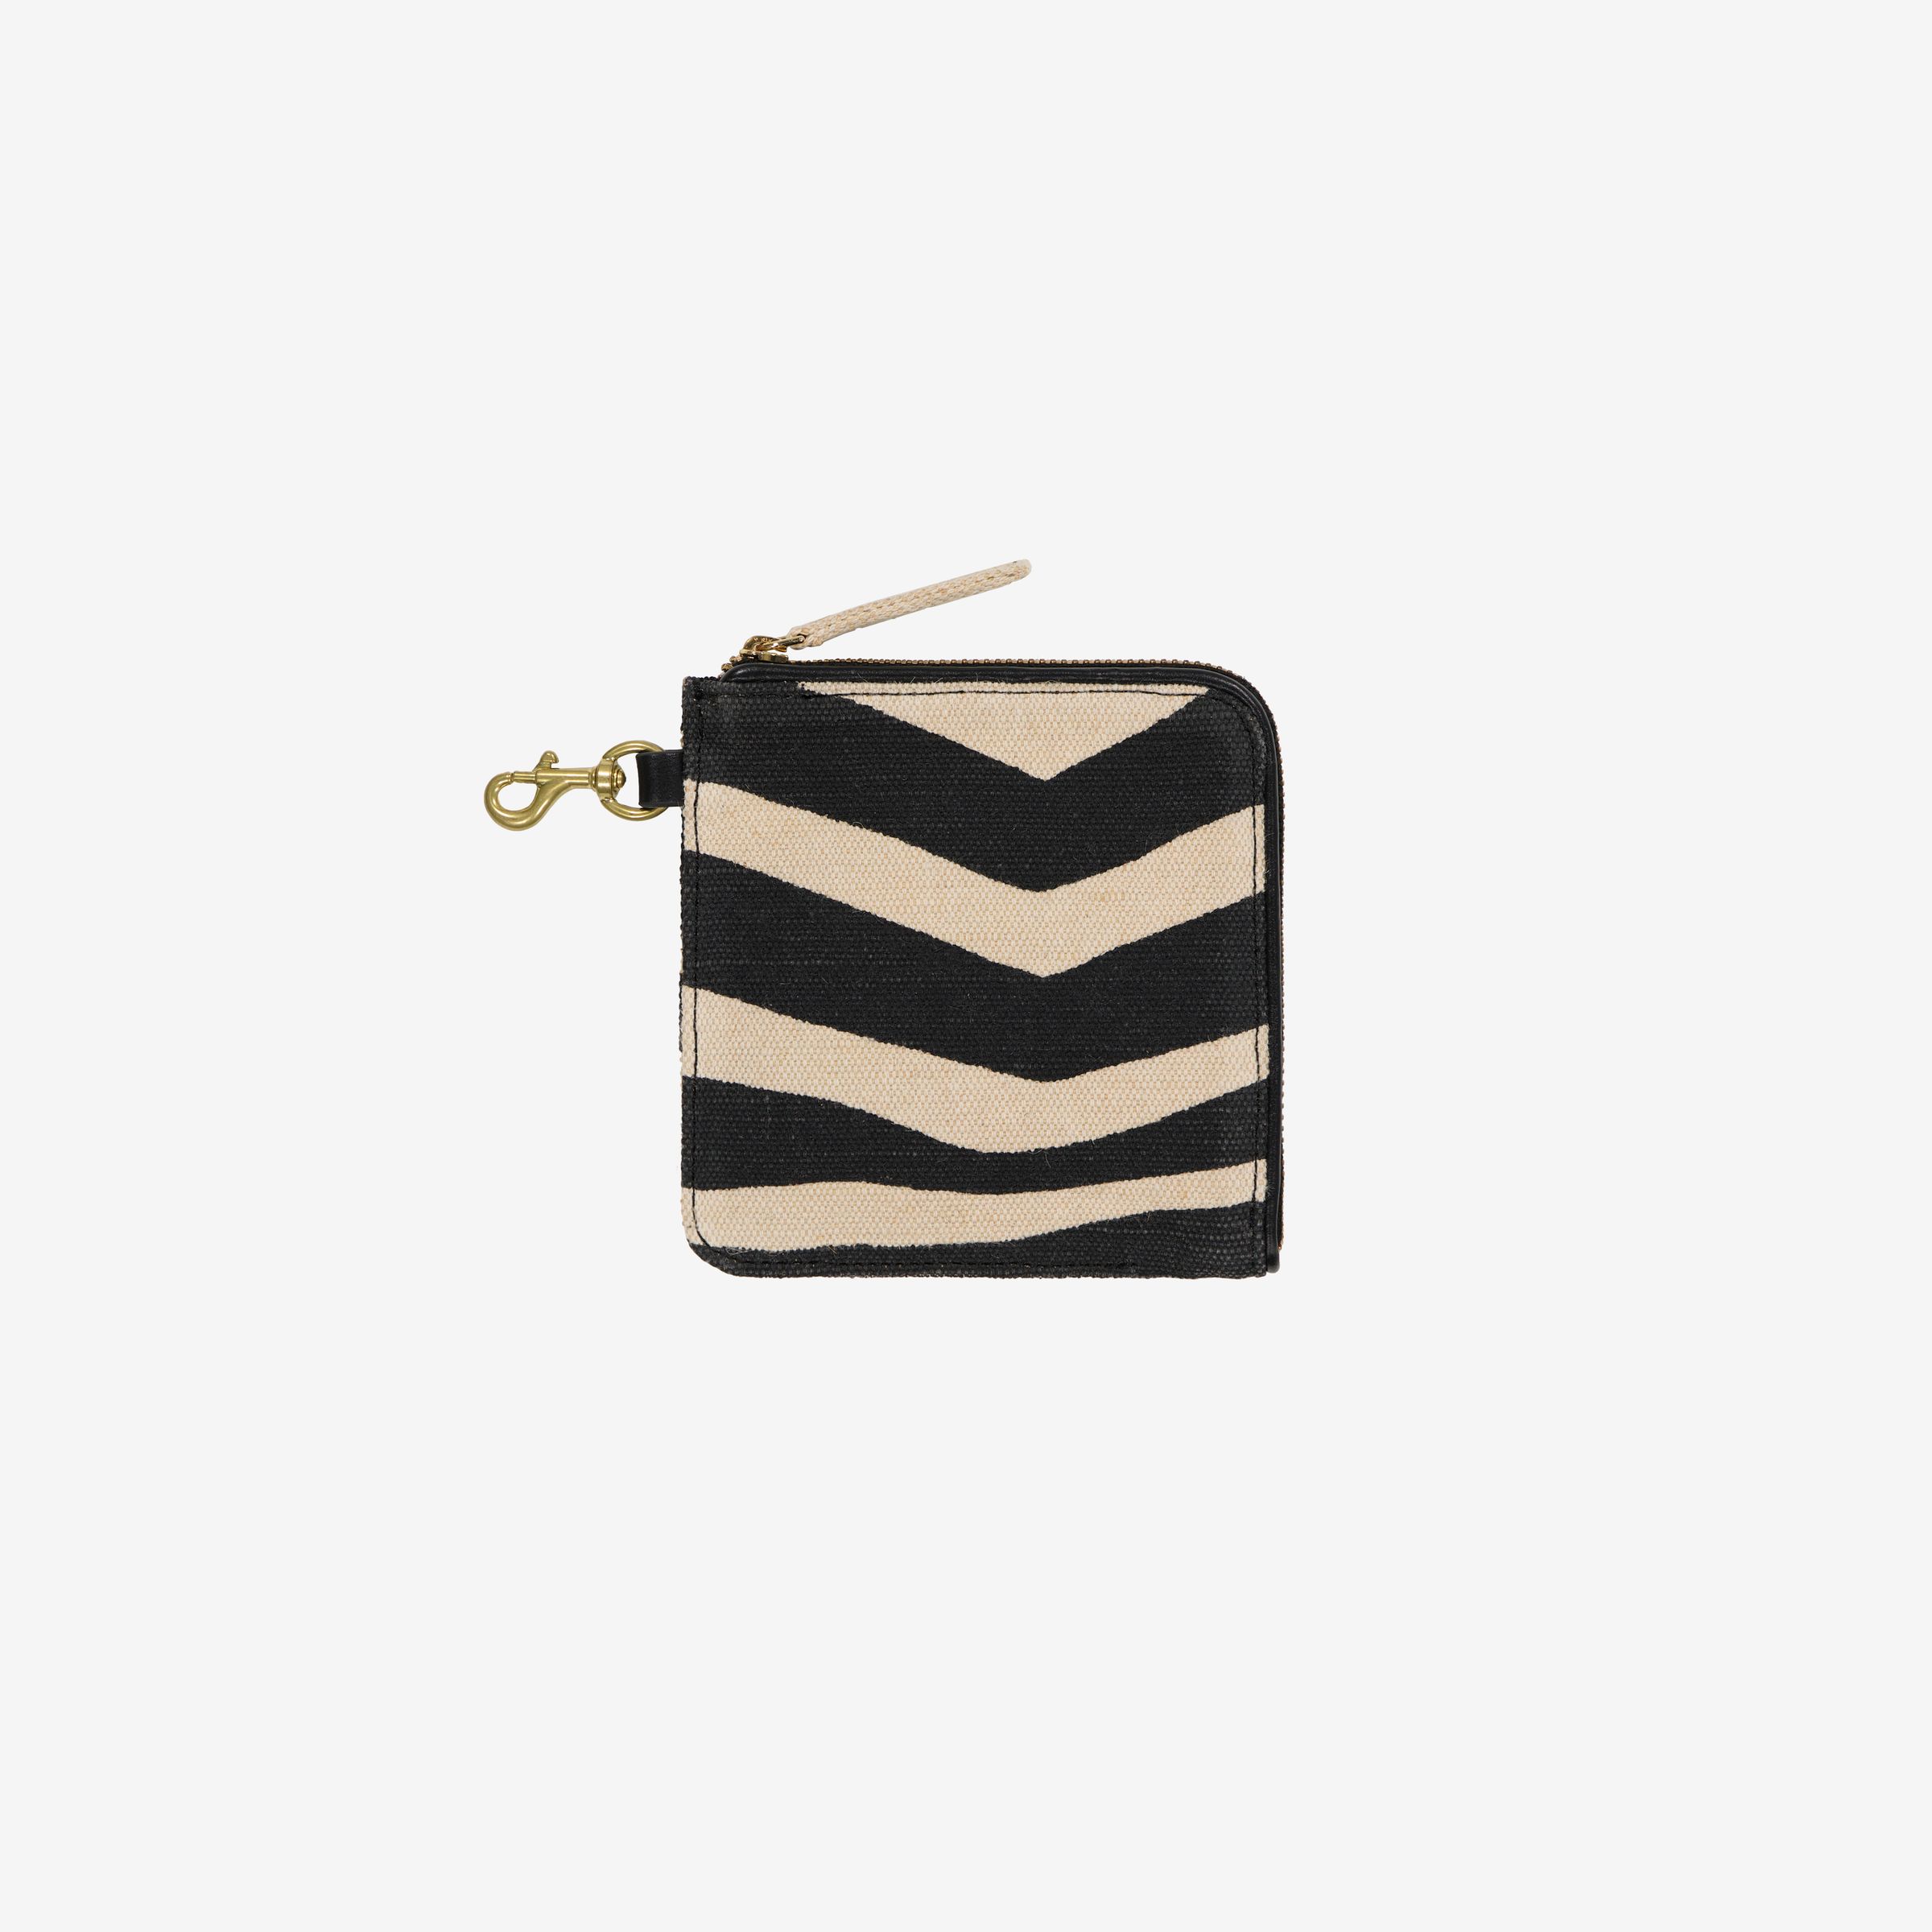 Brieftaschenband - Zebra - Weiß